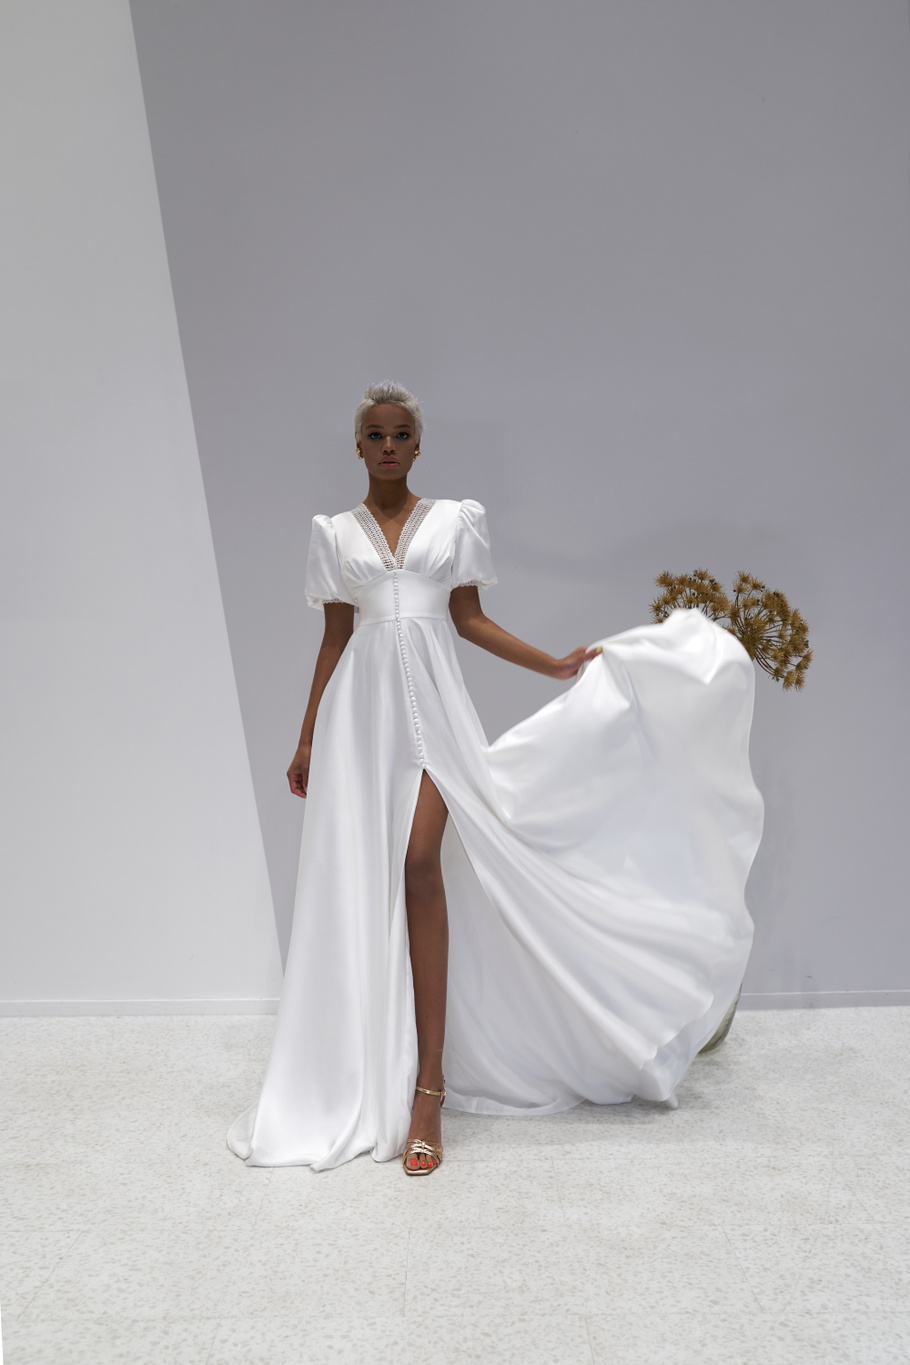 Свадебное платье «Орандж» Марта — купить в Ярославле платье Орандж из коллекции 2021 года